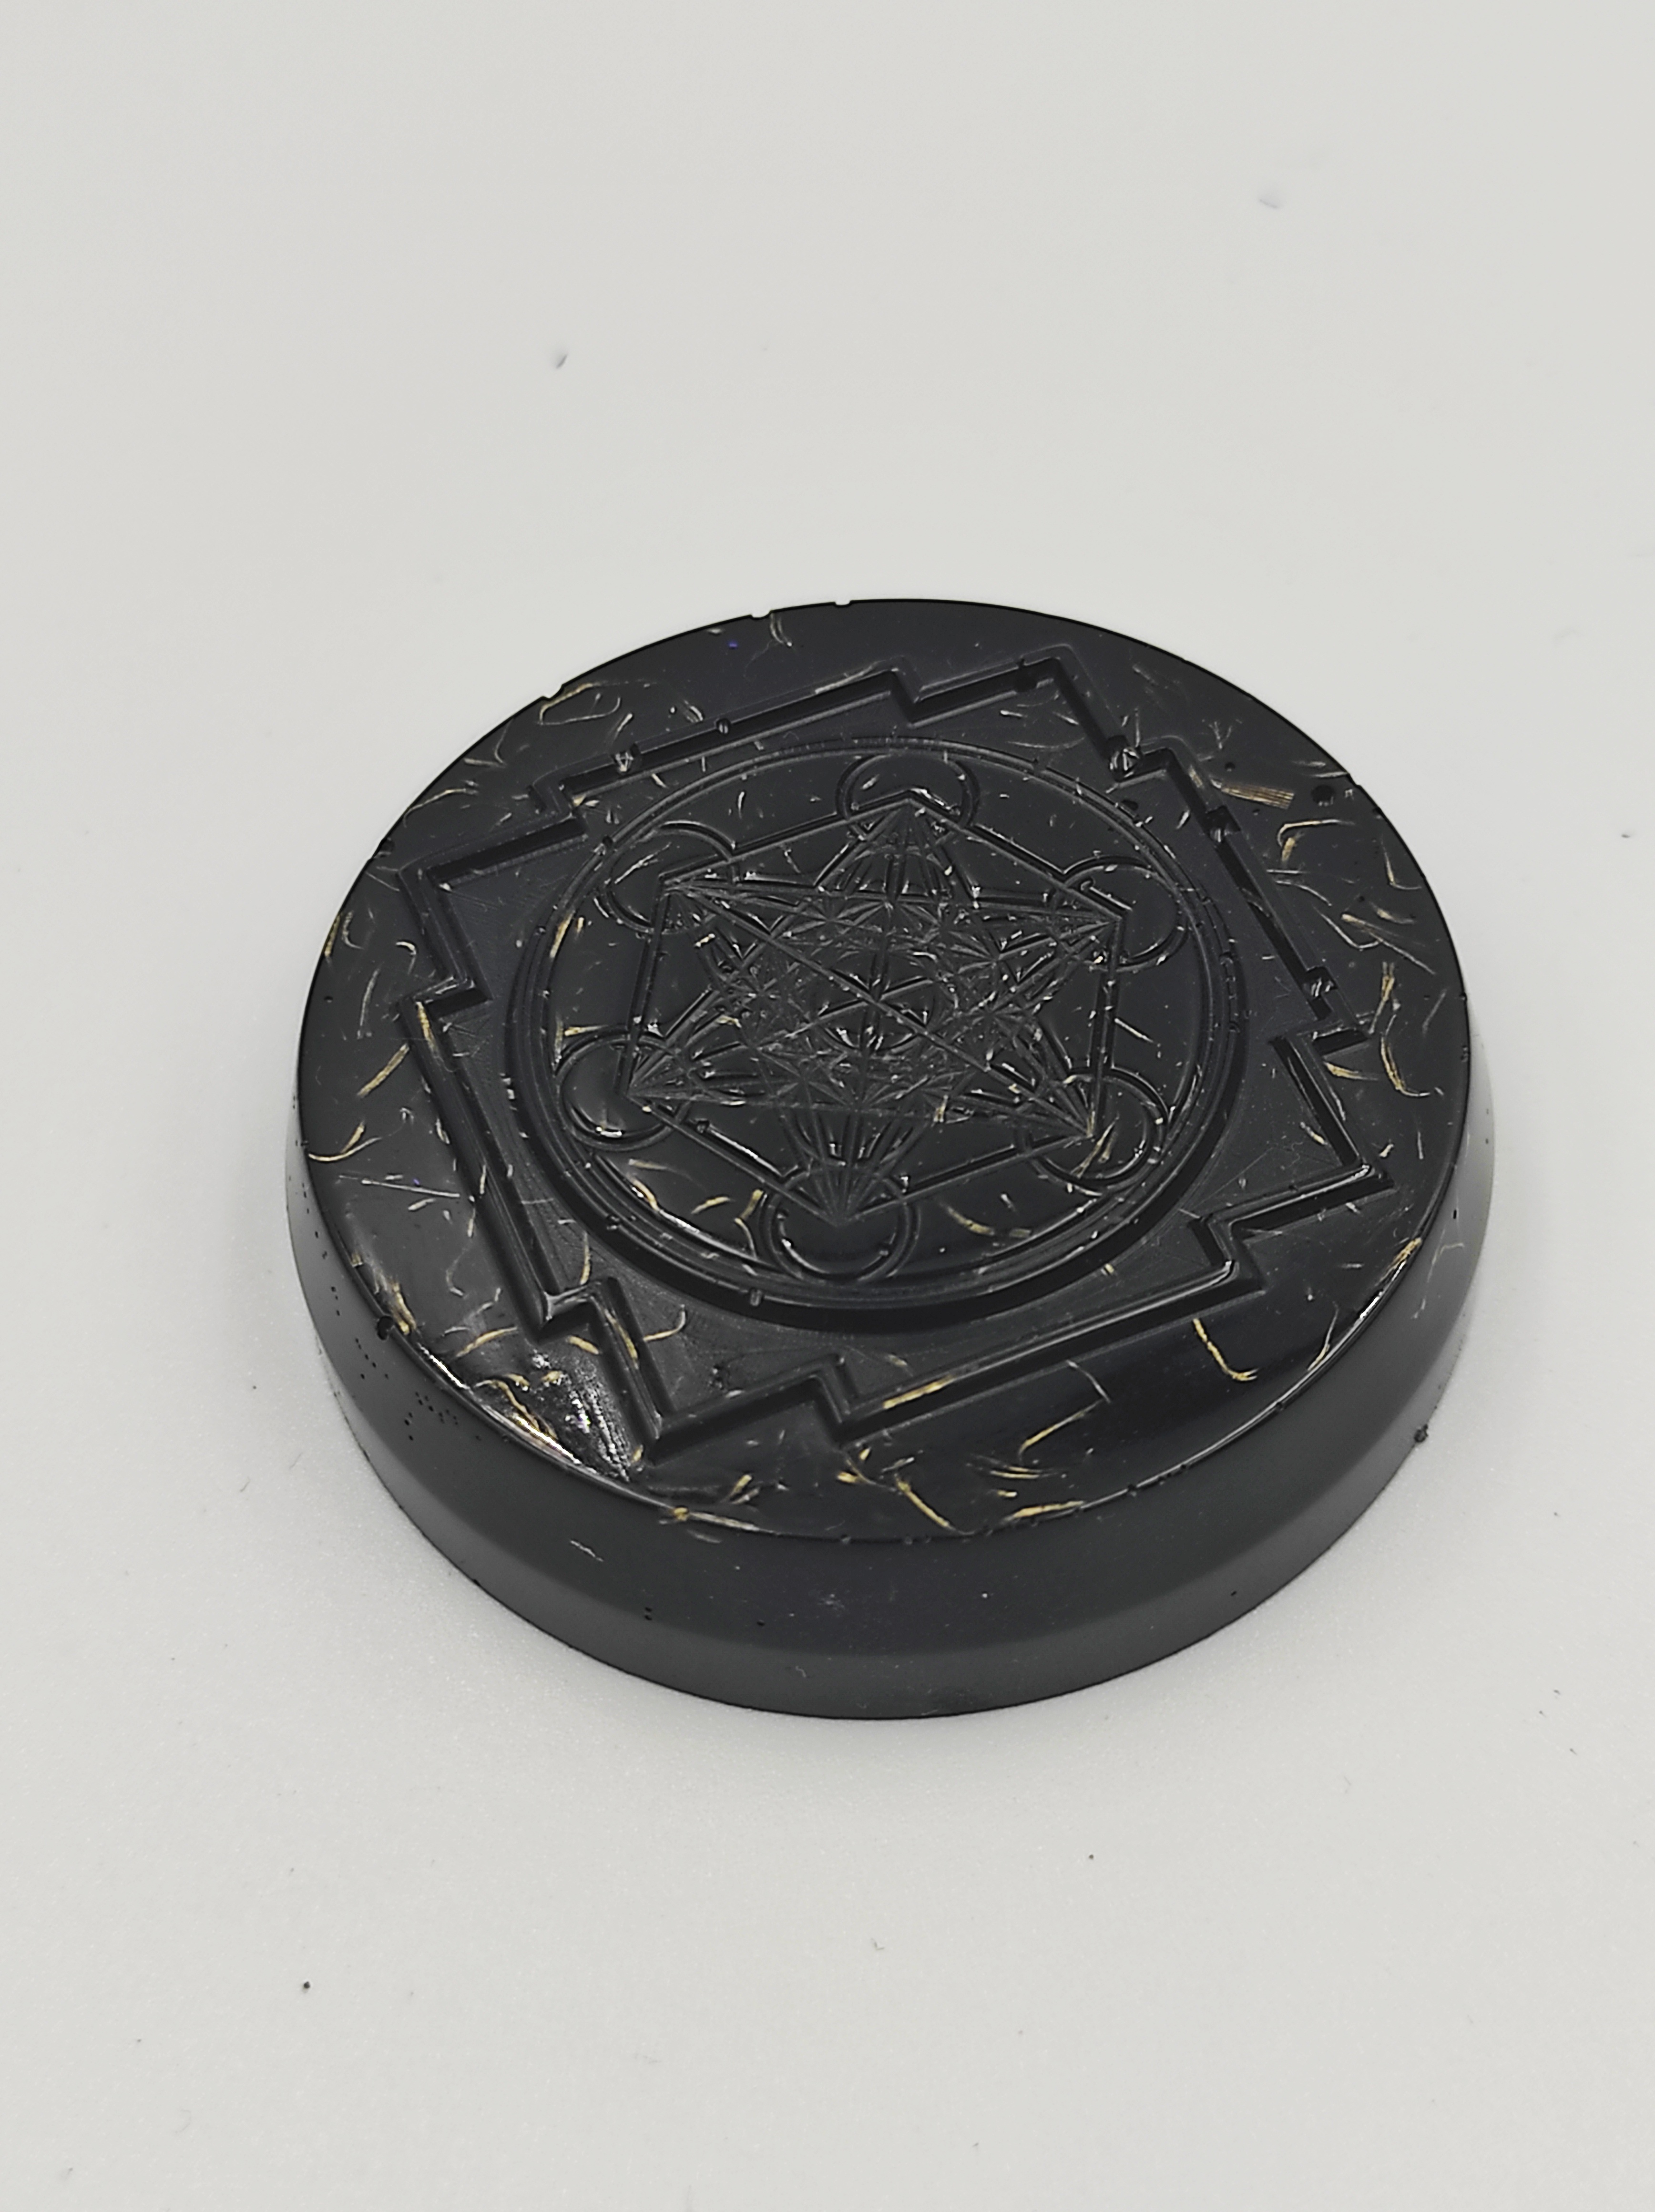 Beschermschijf, met Merkabah symbool, diameter 4,5 cm , Shungit en Toermalijn